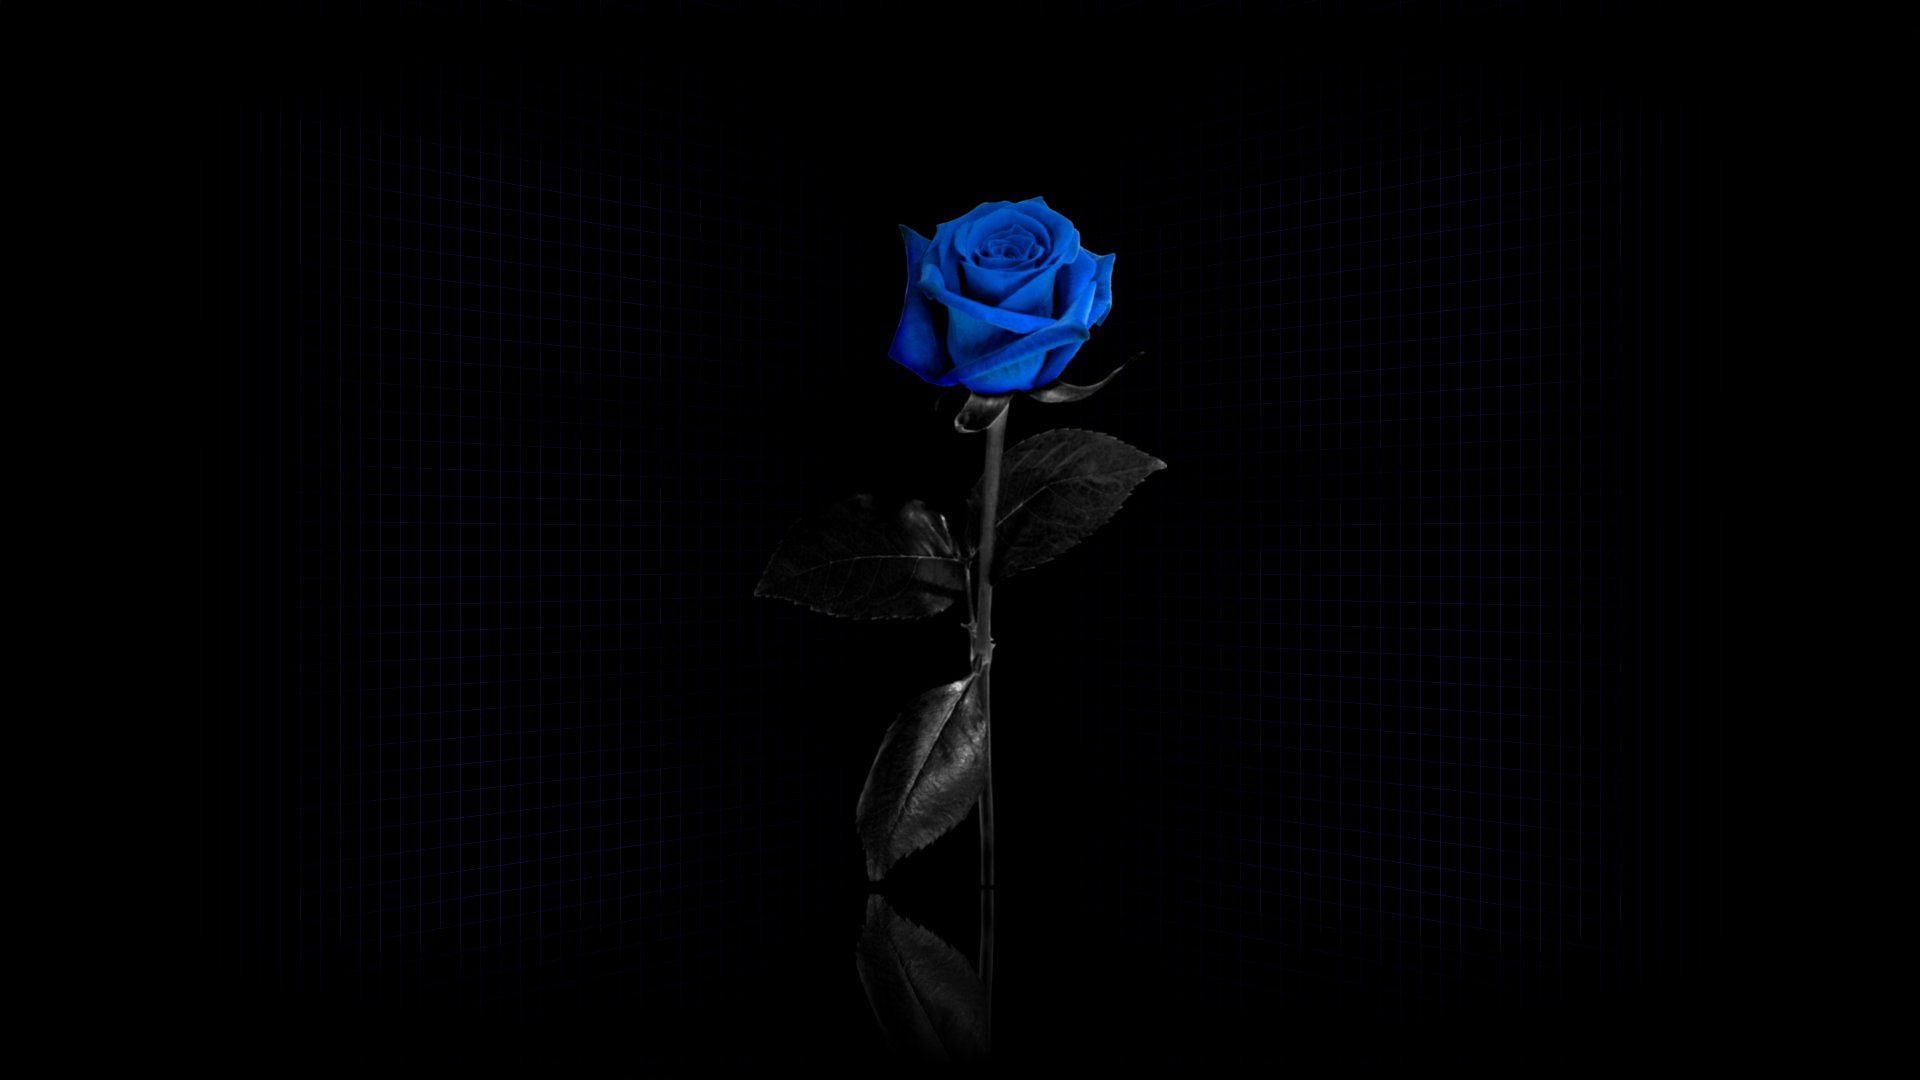 rose, rose flower, dark, grid, blue, reflection, flower cellphone